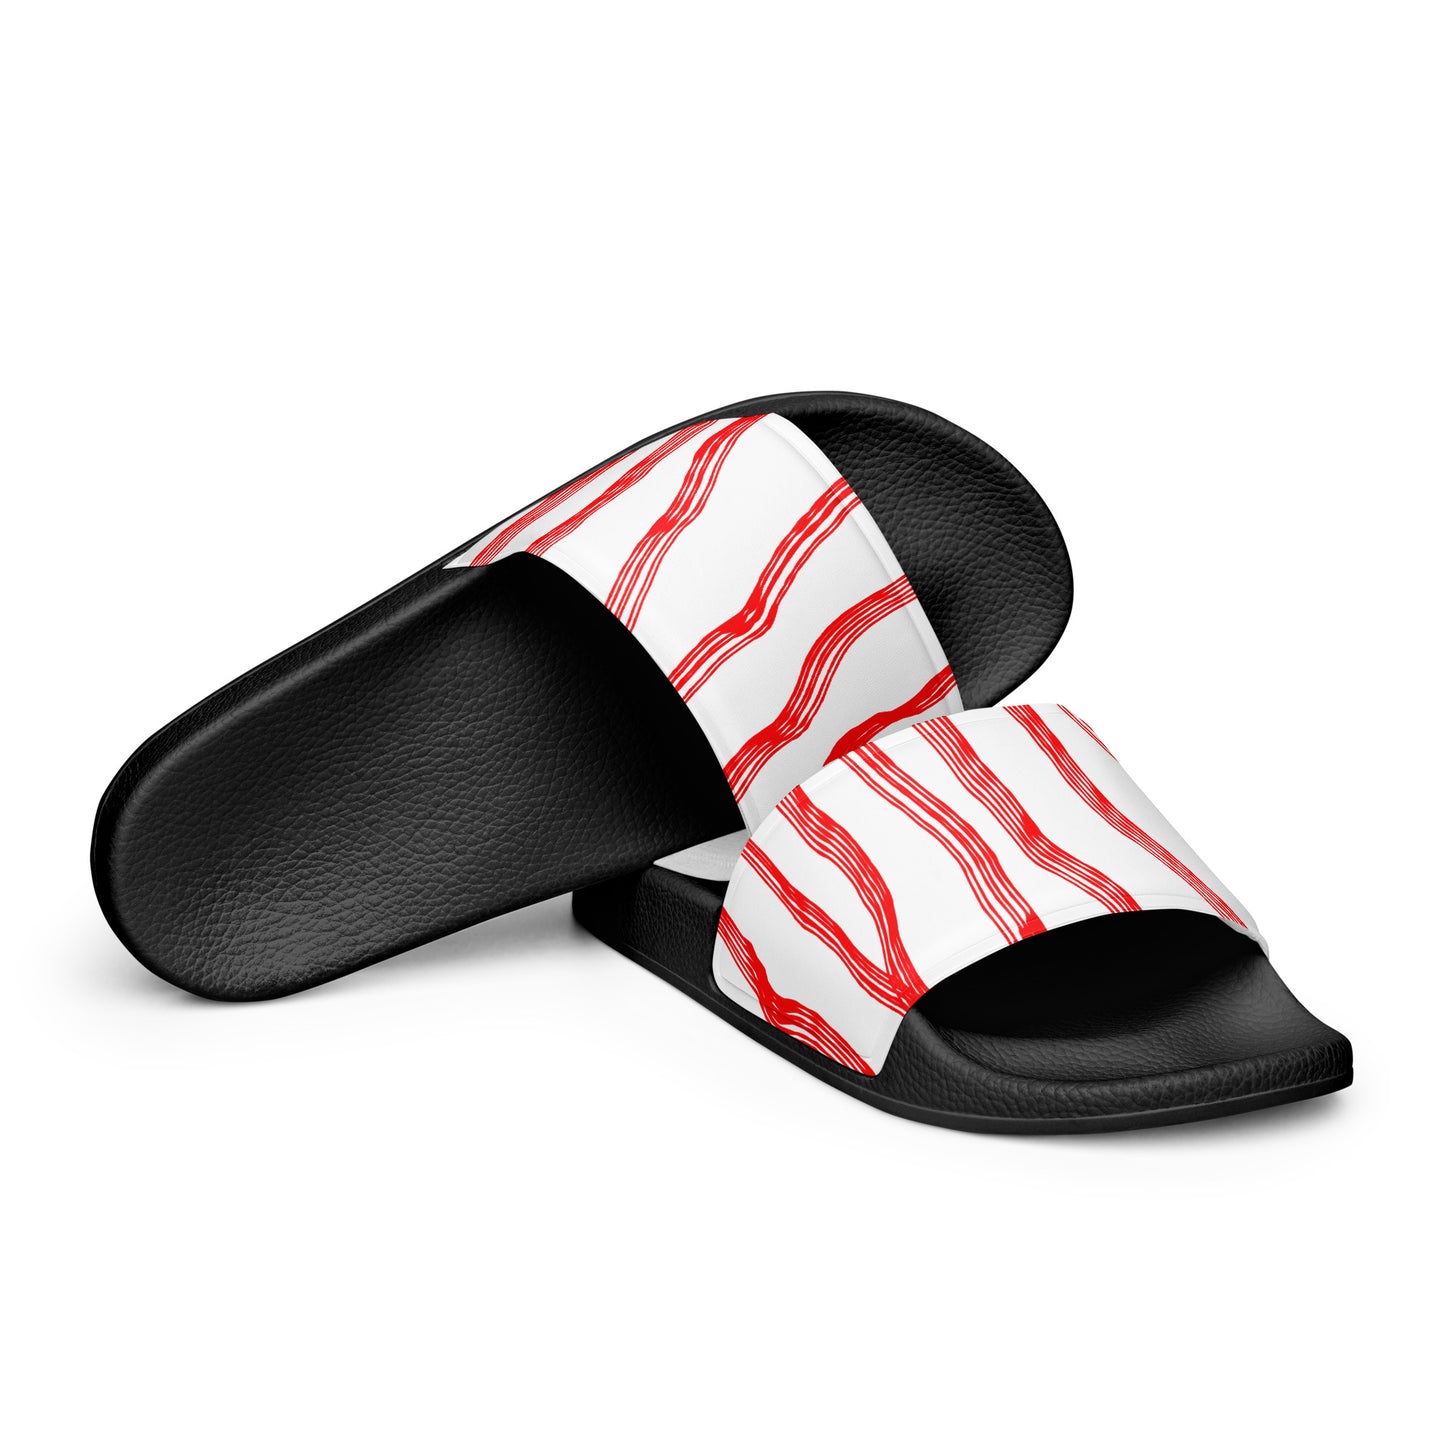 Women's sandals - Red Scretch